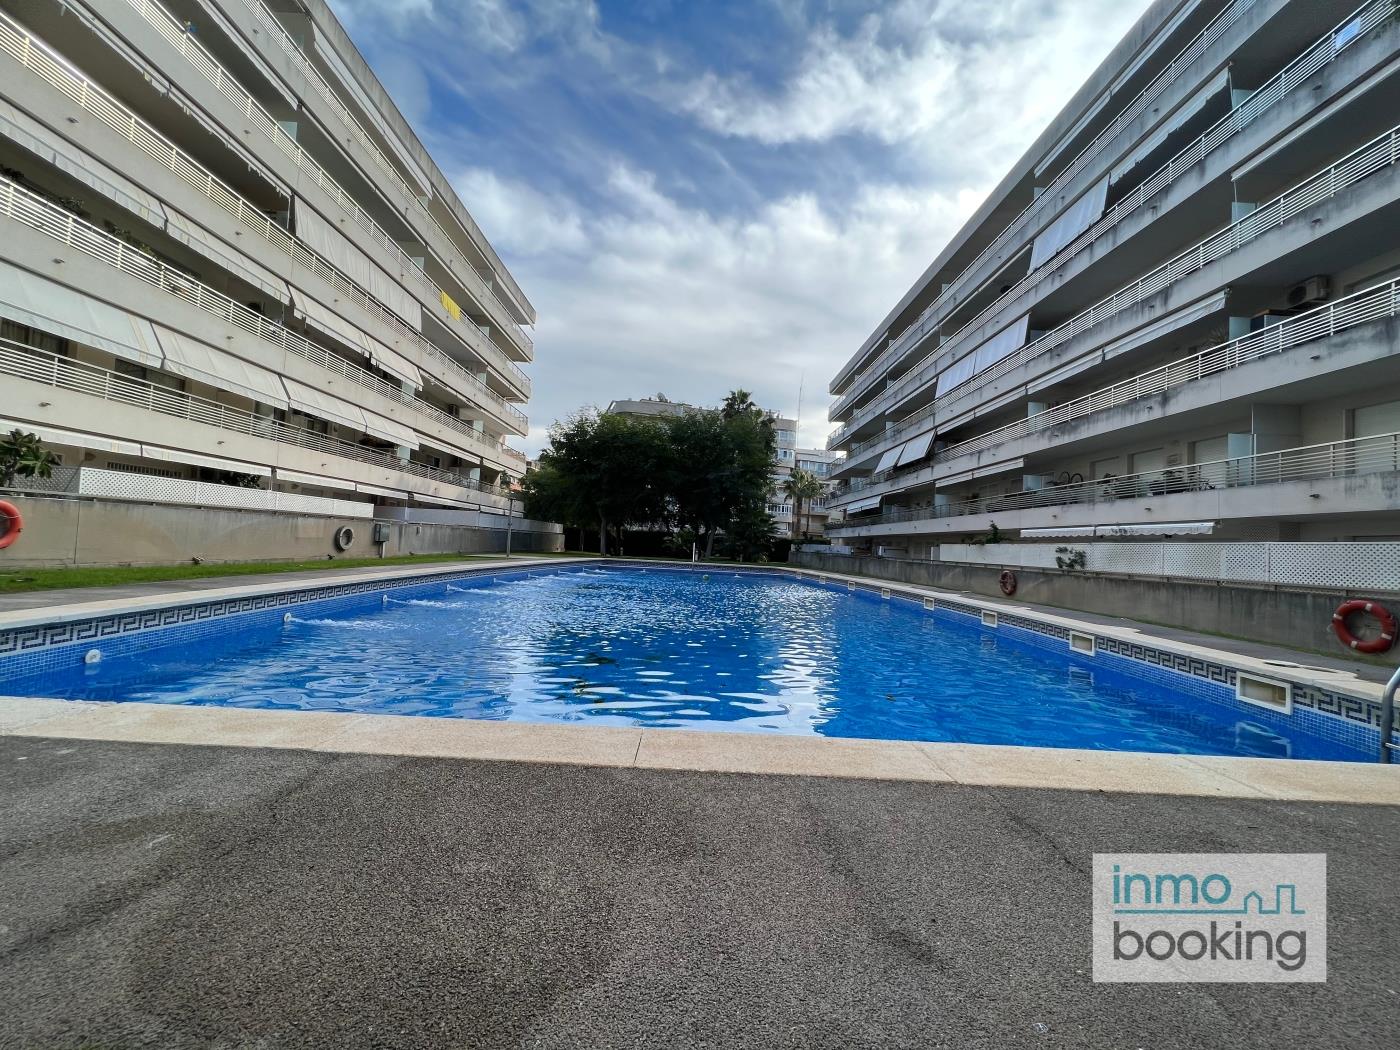 Inmobooking Villa Elvira , con piscina y aparcamiento gratis en salou